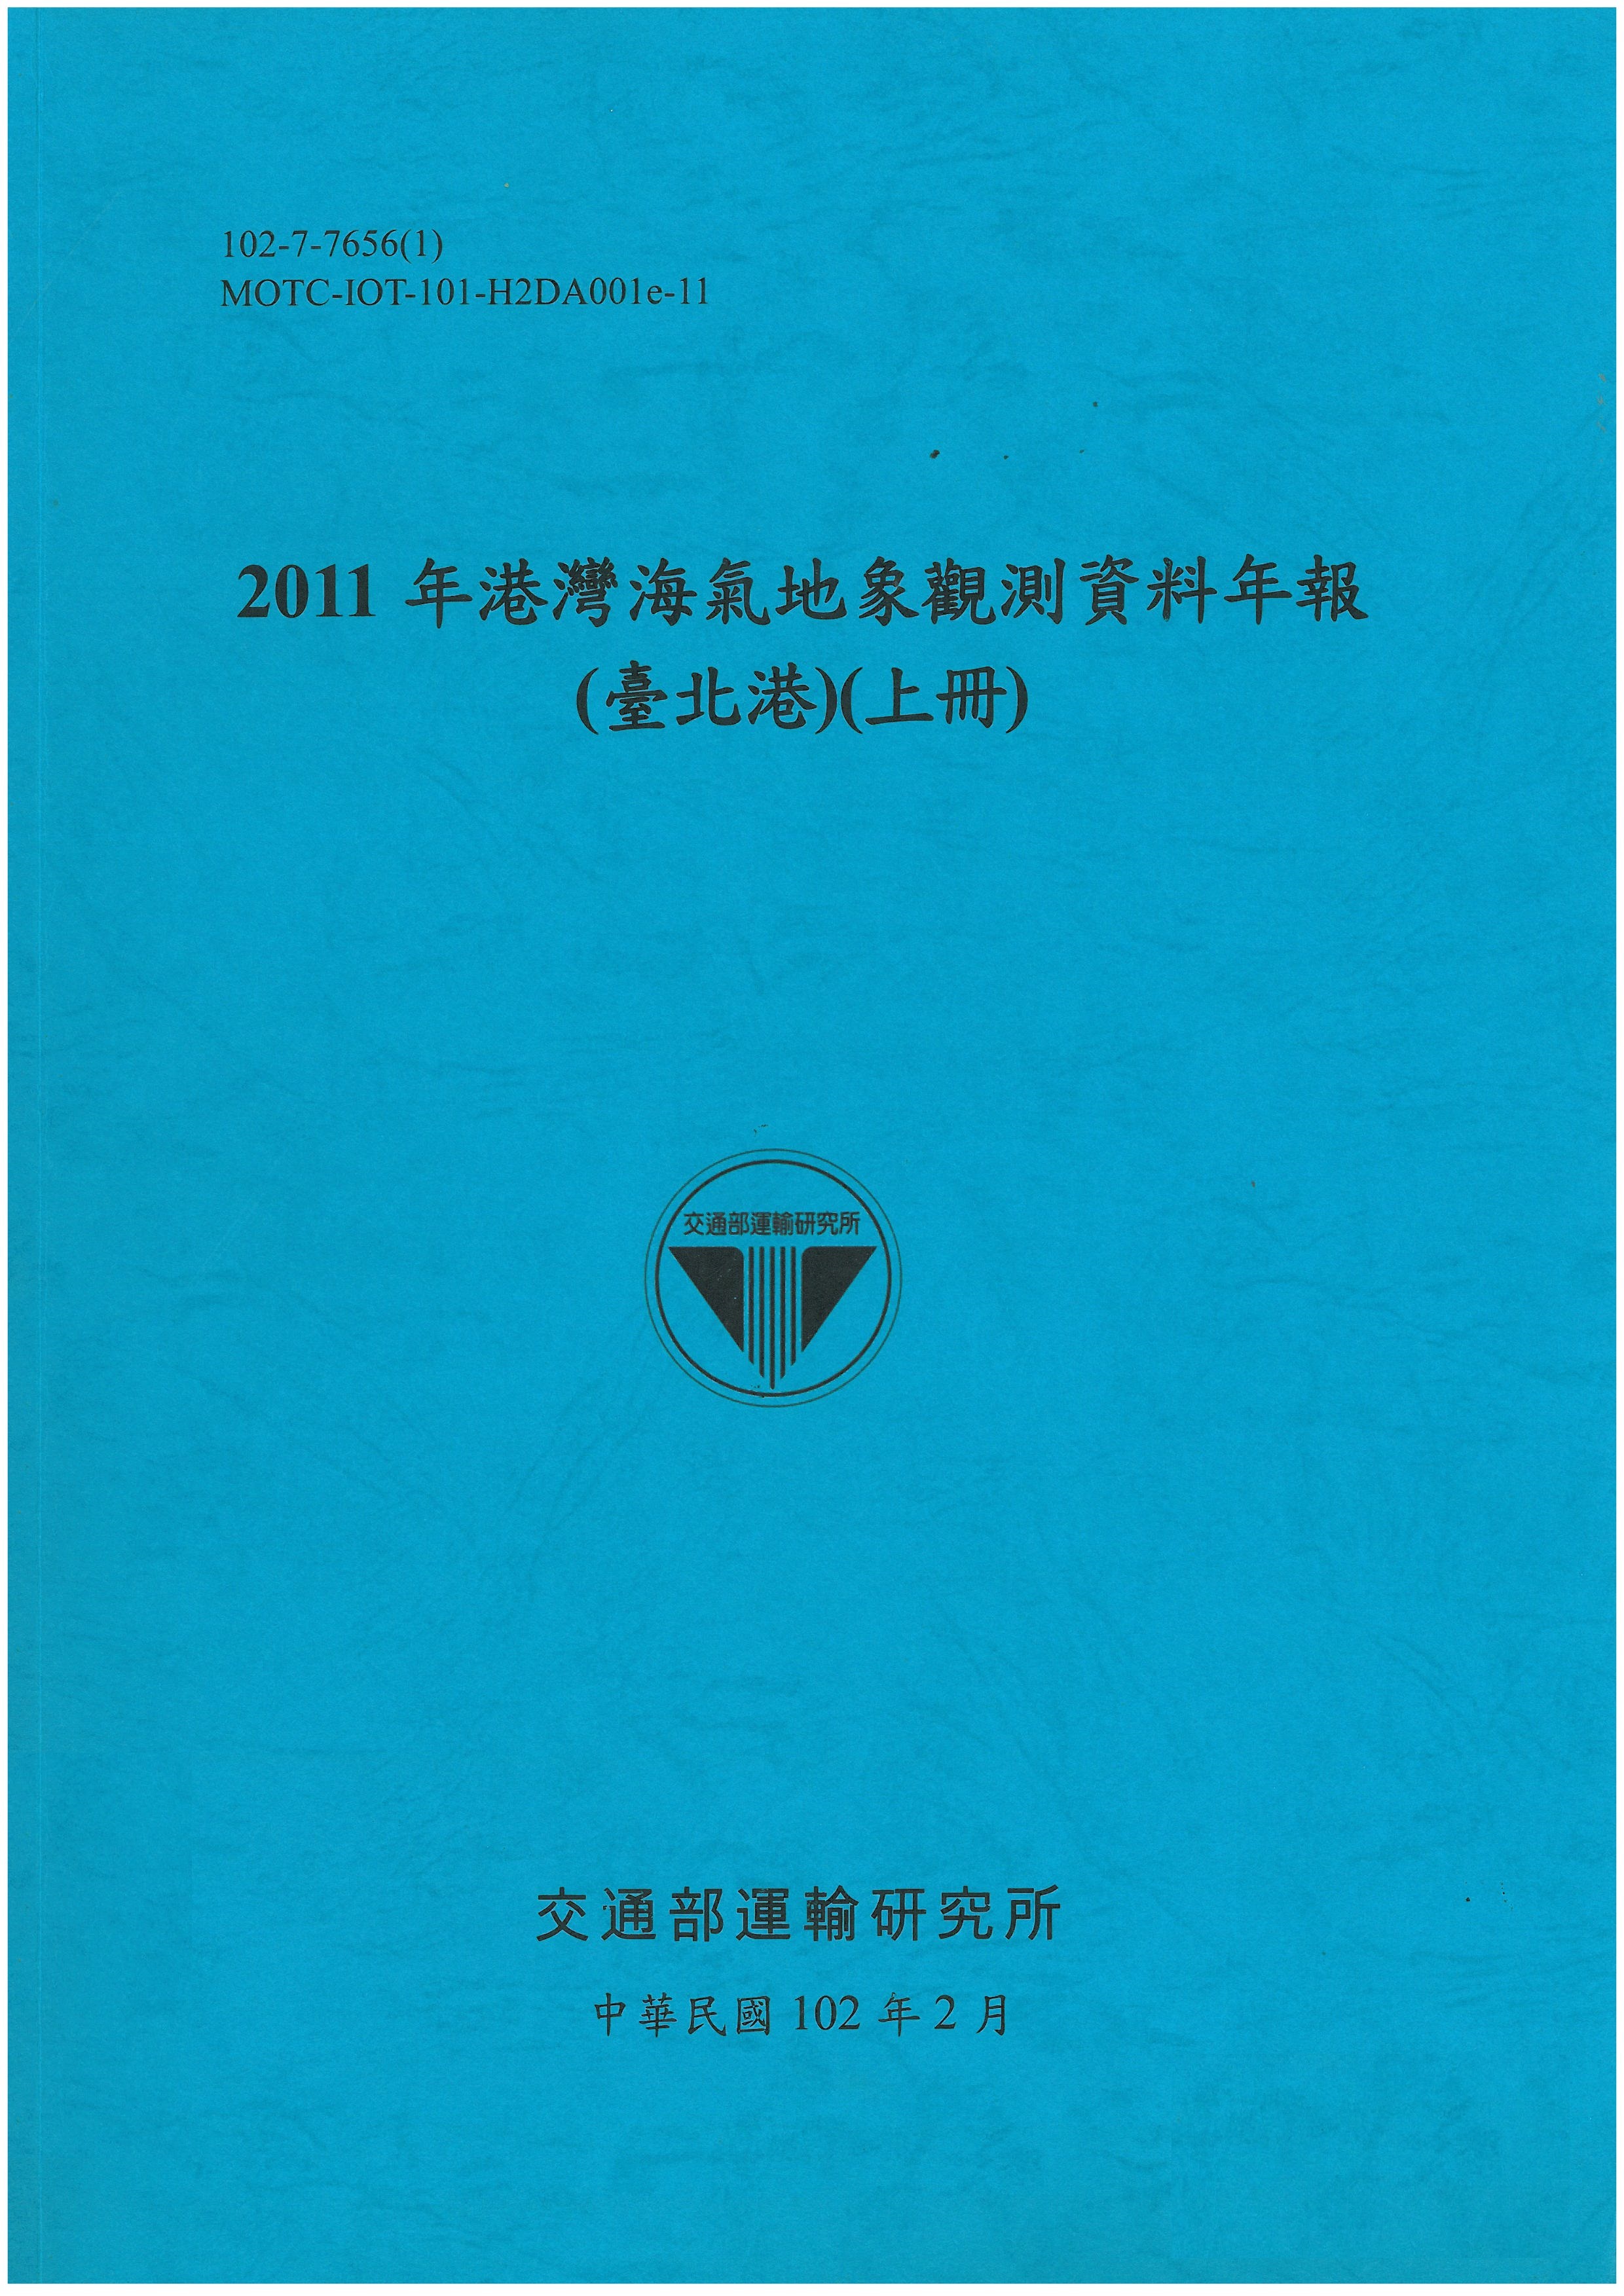 2011年港灣海氣地象觀測資料年報(臺北港)(上冊)